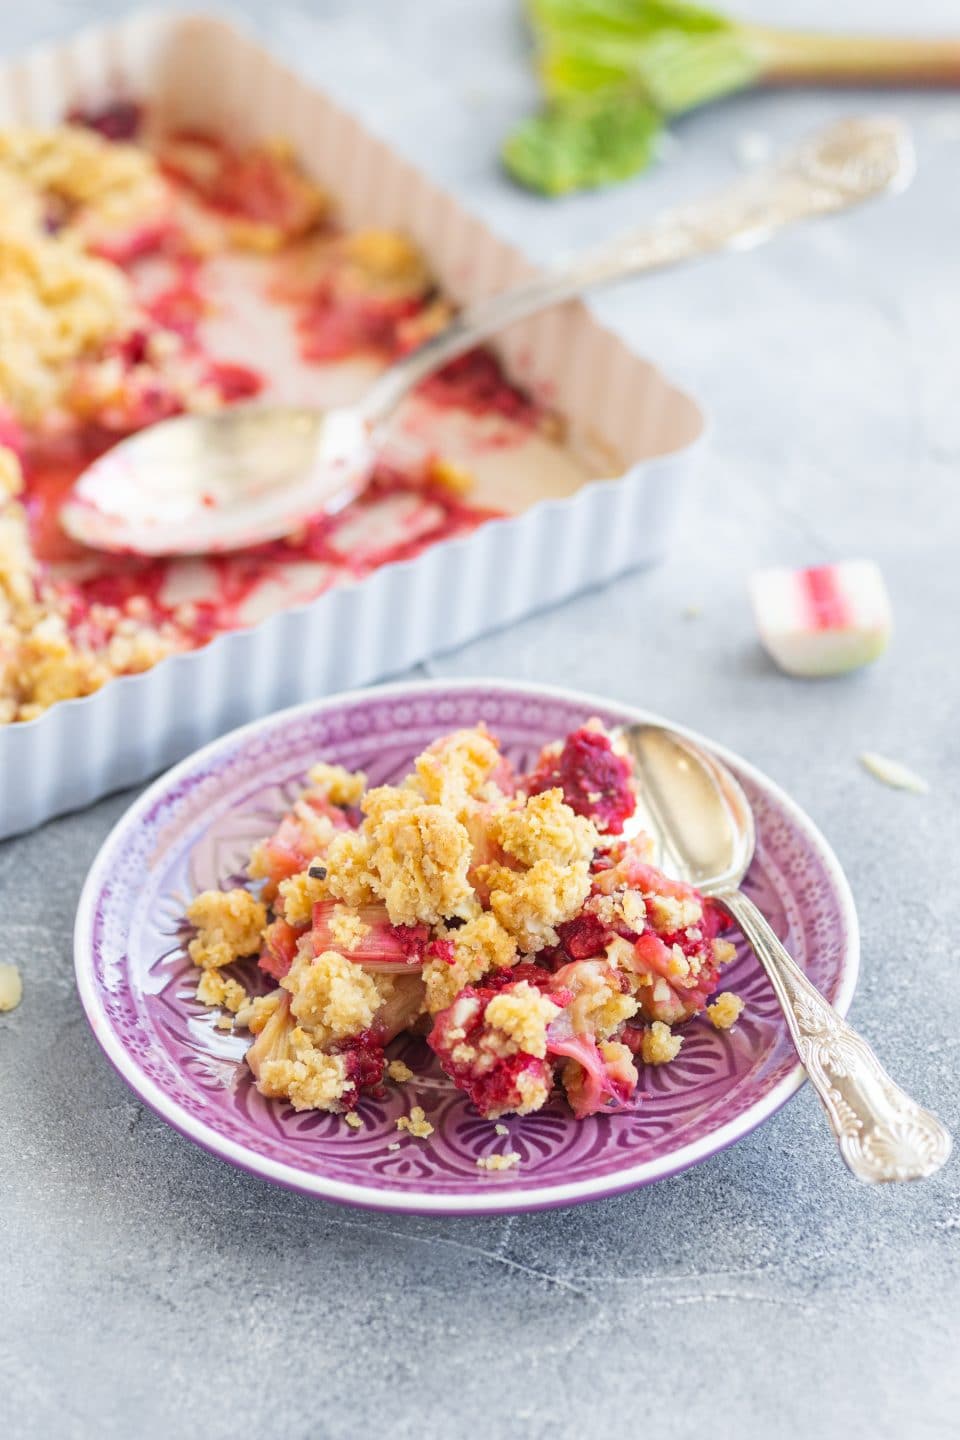 rhubarb-crumble-with-raspberries